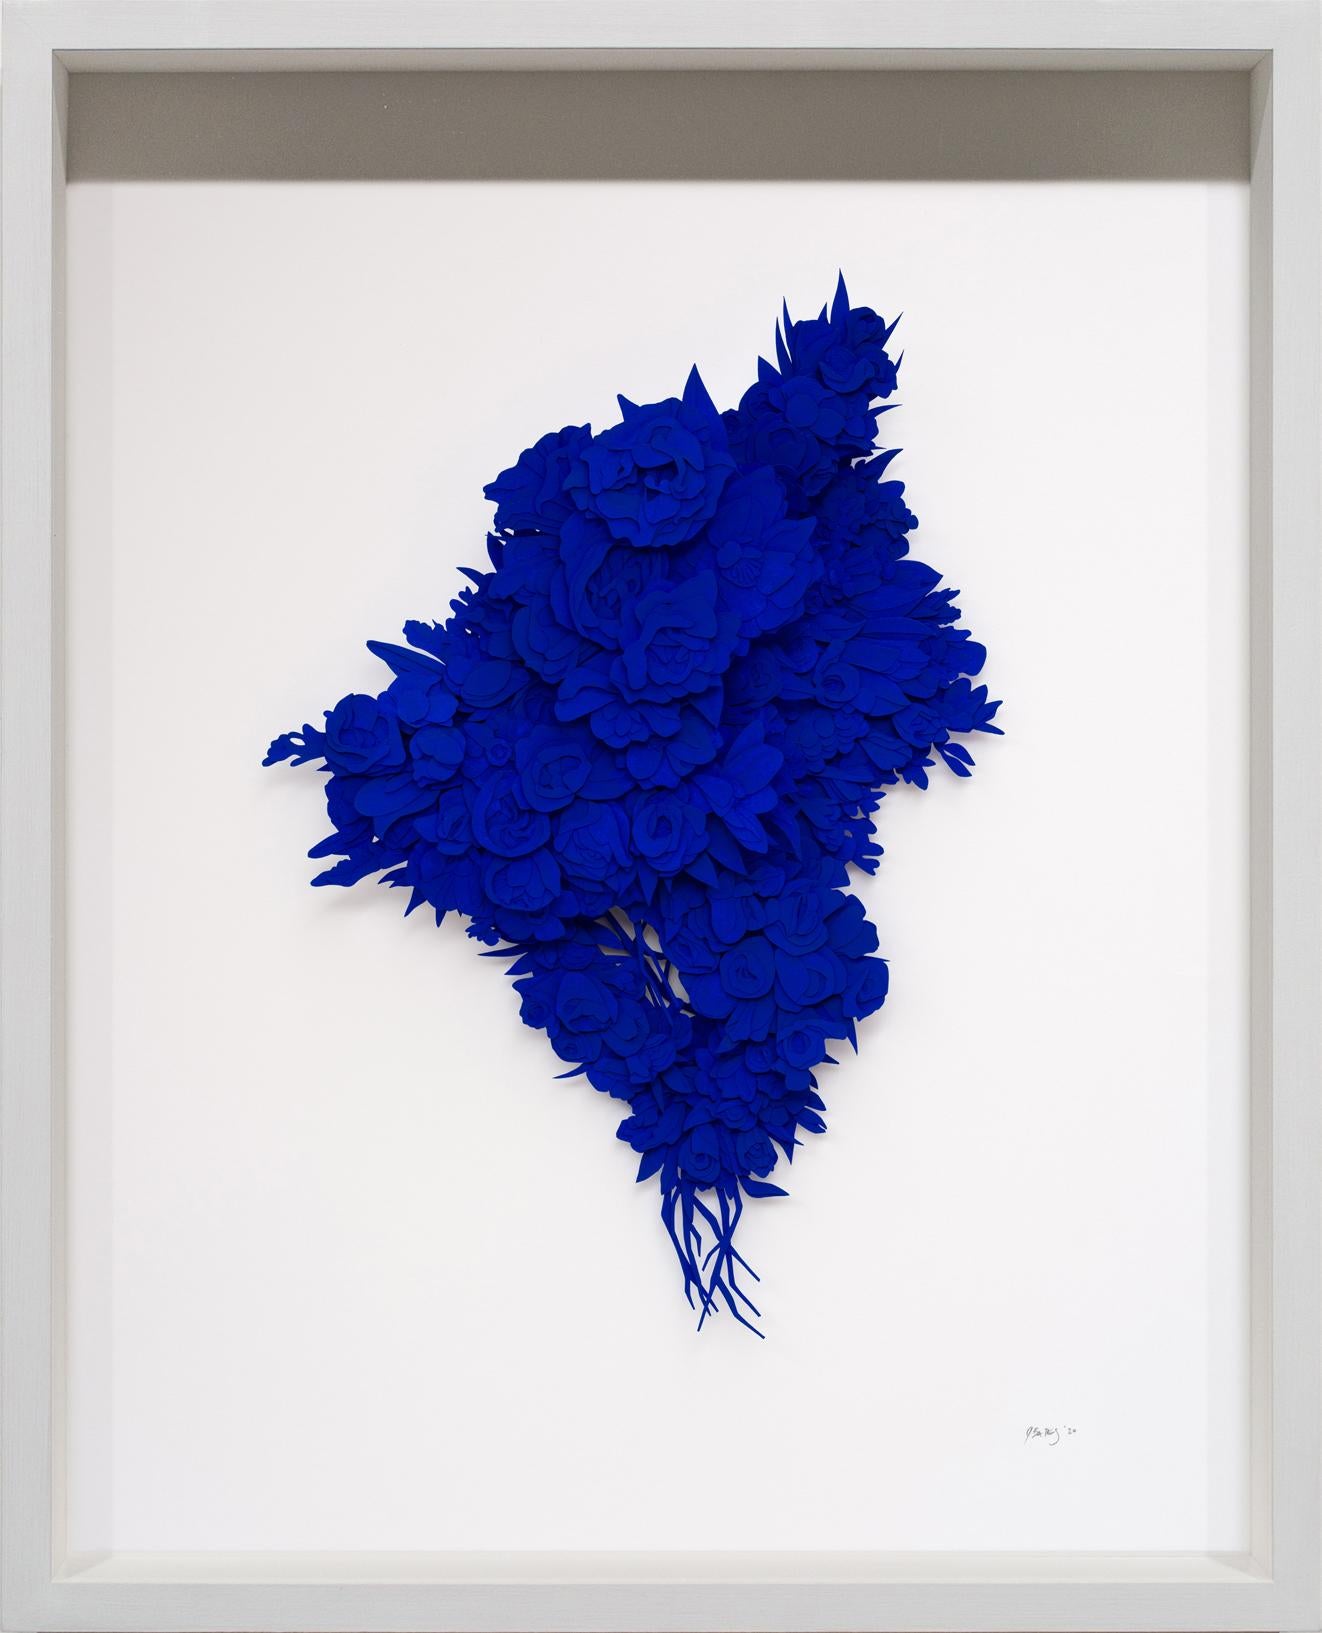 Still-Life Sculpture Joey Bates - « Explosion #11 », sculpture de fleurs en papier taillé bleu cobalt, œuvre d'art florale